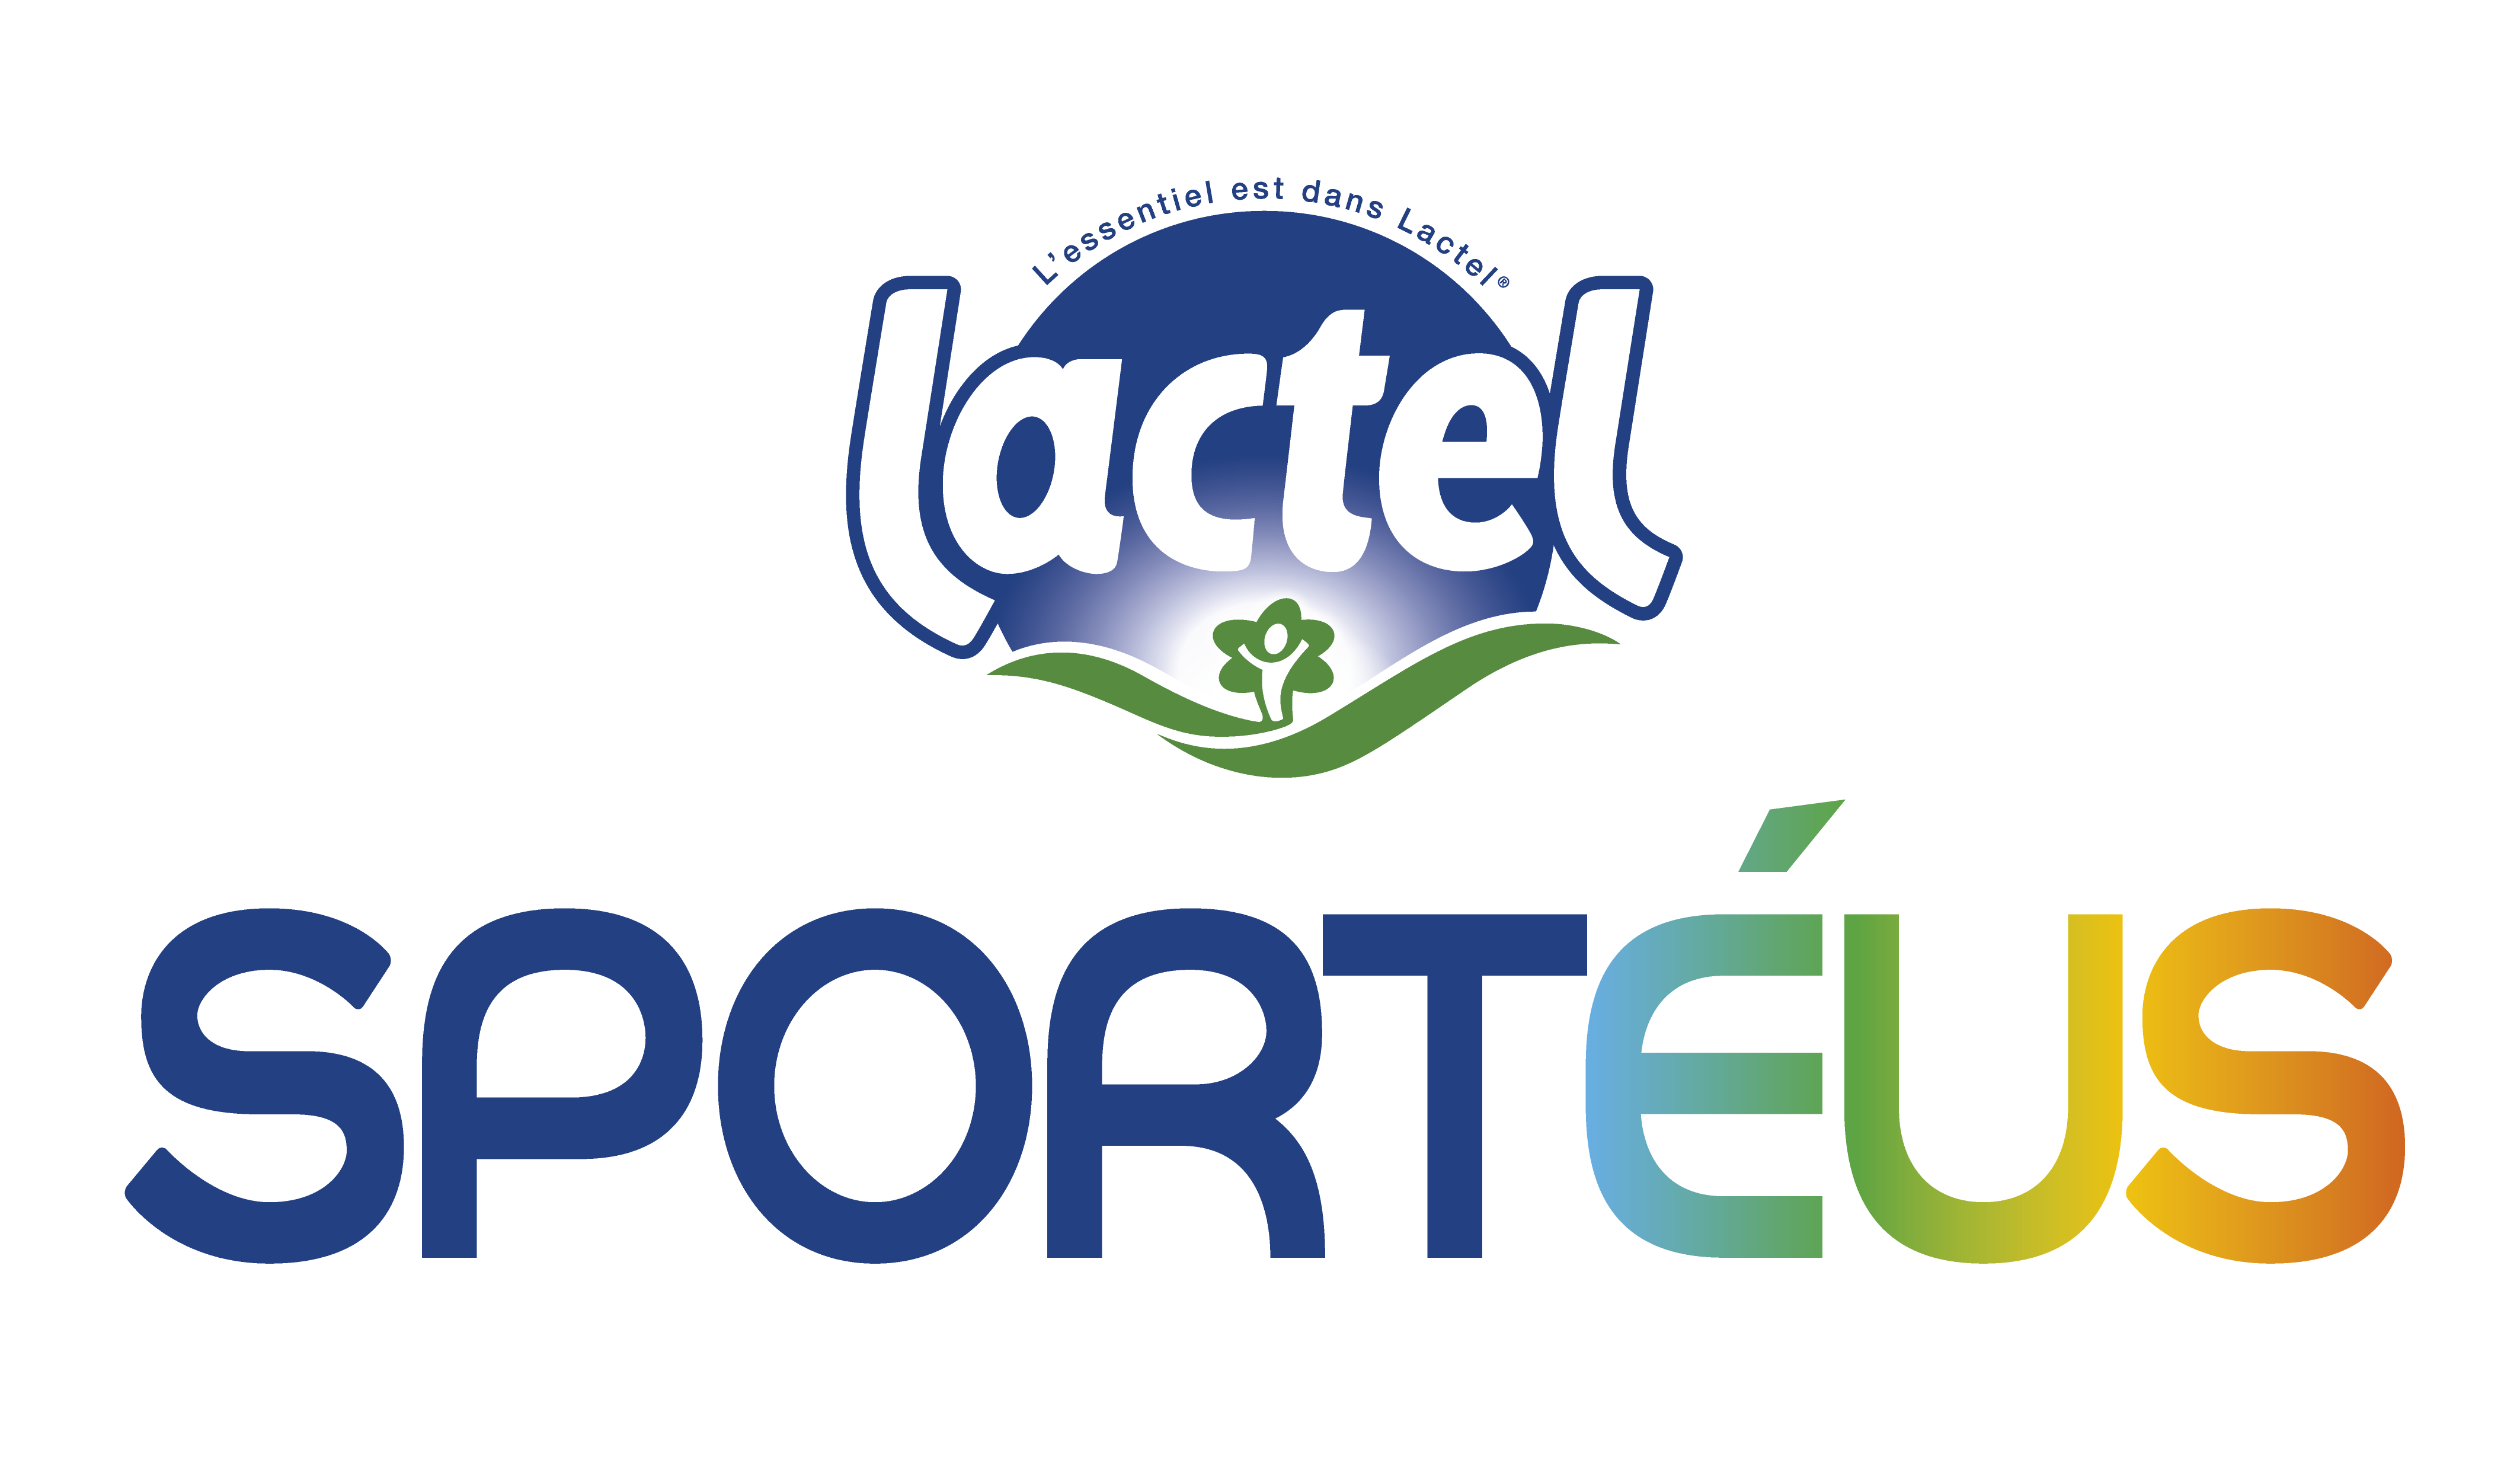 Lactel_Sporteus